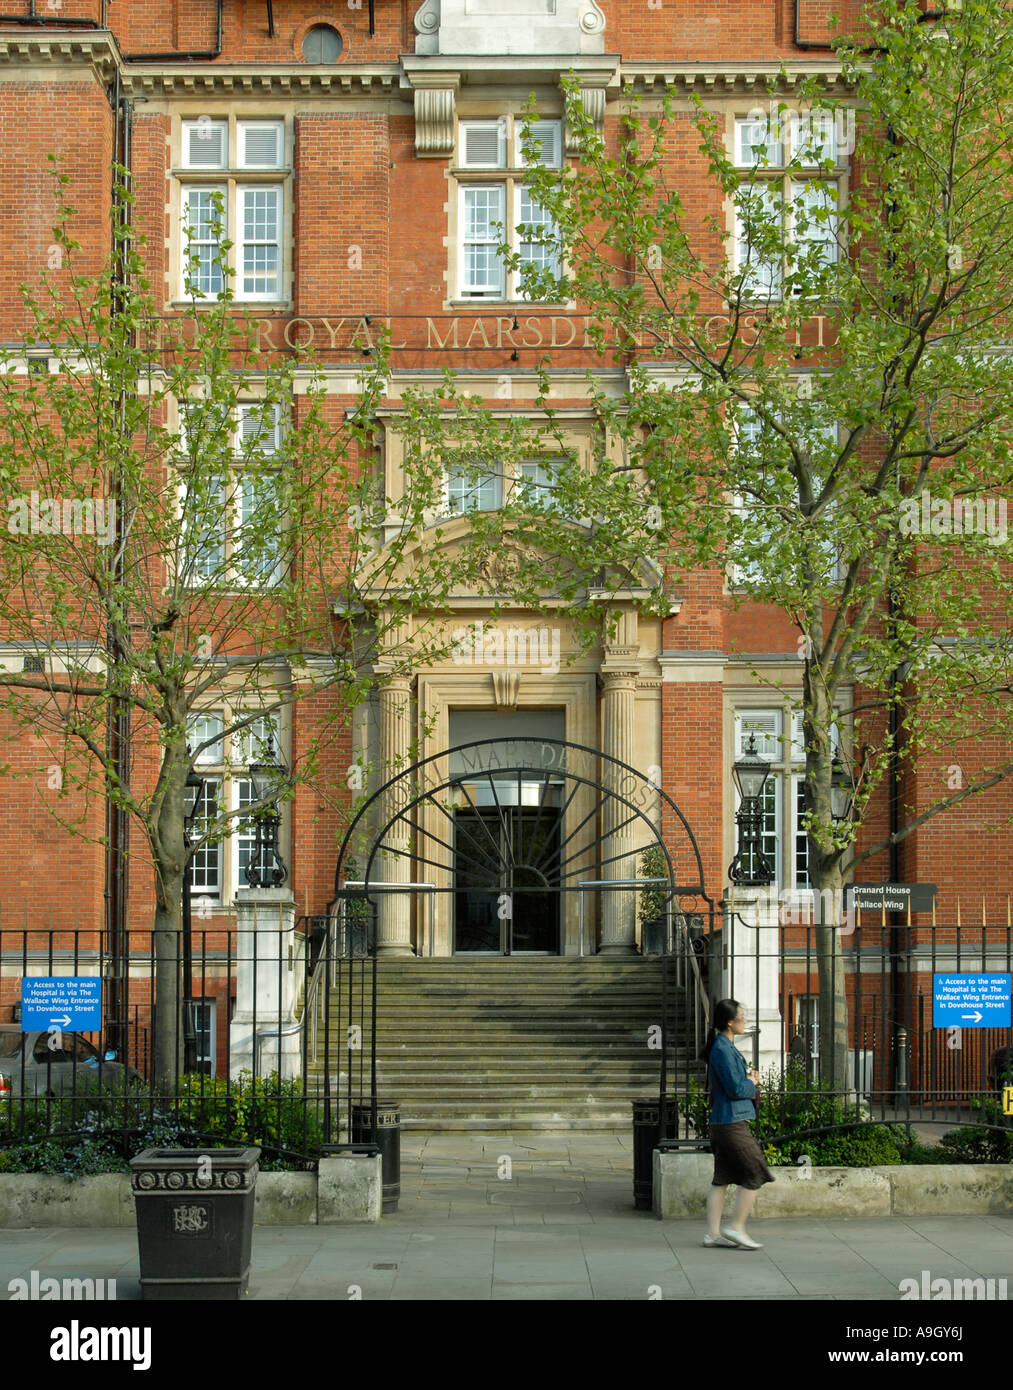 La Royal Marsden Hospital à Londres Banque D'Images